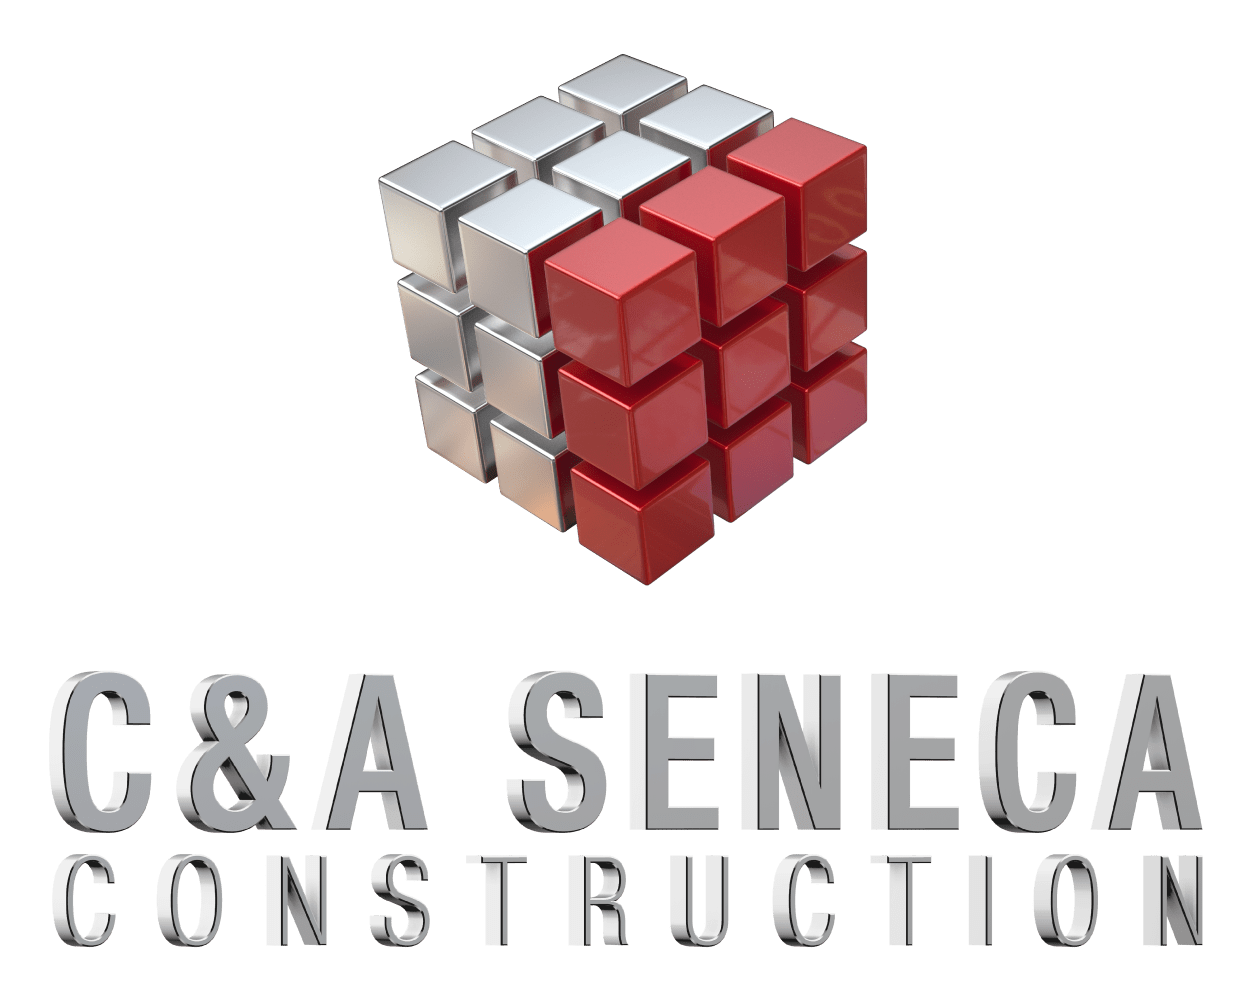 C&A Seneca Construction 187